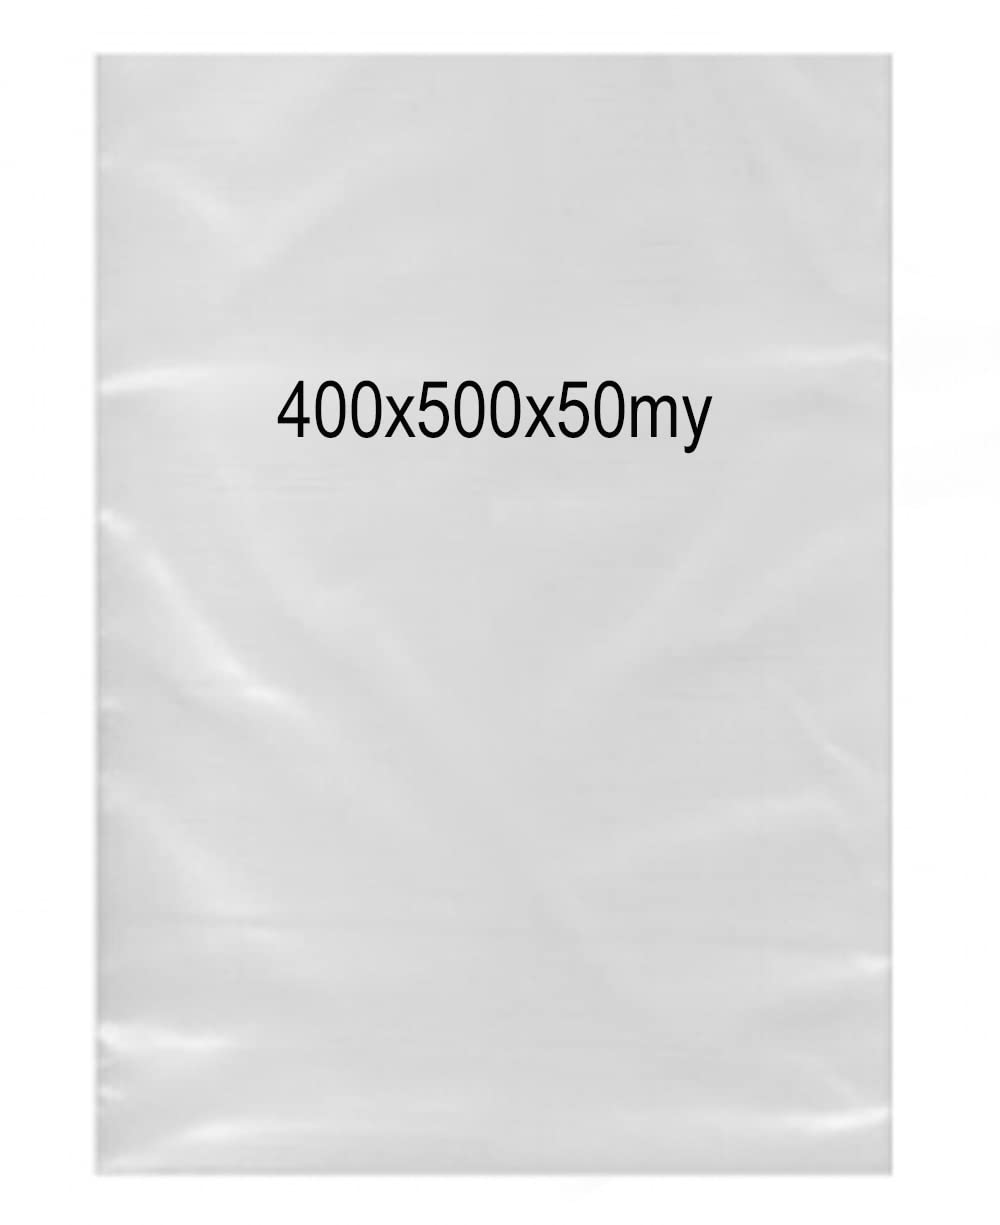 1000 Stück PE-Beutel 400x500x0,050mm (50mµ) einseitig offen ideal für Balkenschweißgerät | Polybeutel Plastikbeutel Folienbeutel Impulsbeutel | Flachbeutel Tüte Tütchen Beutel transparent